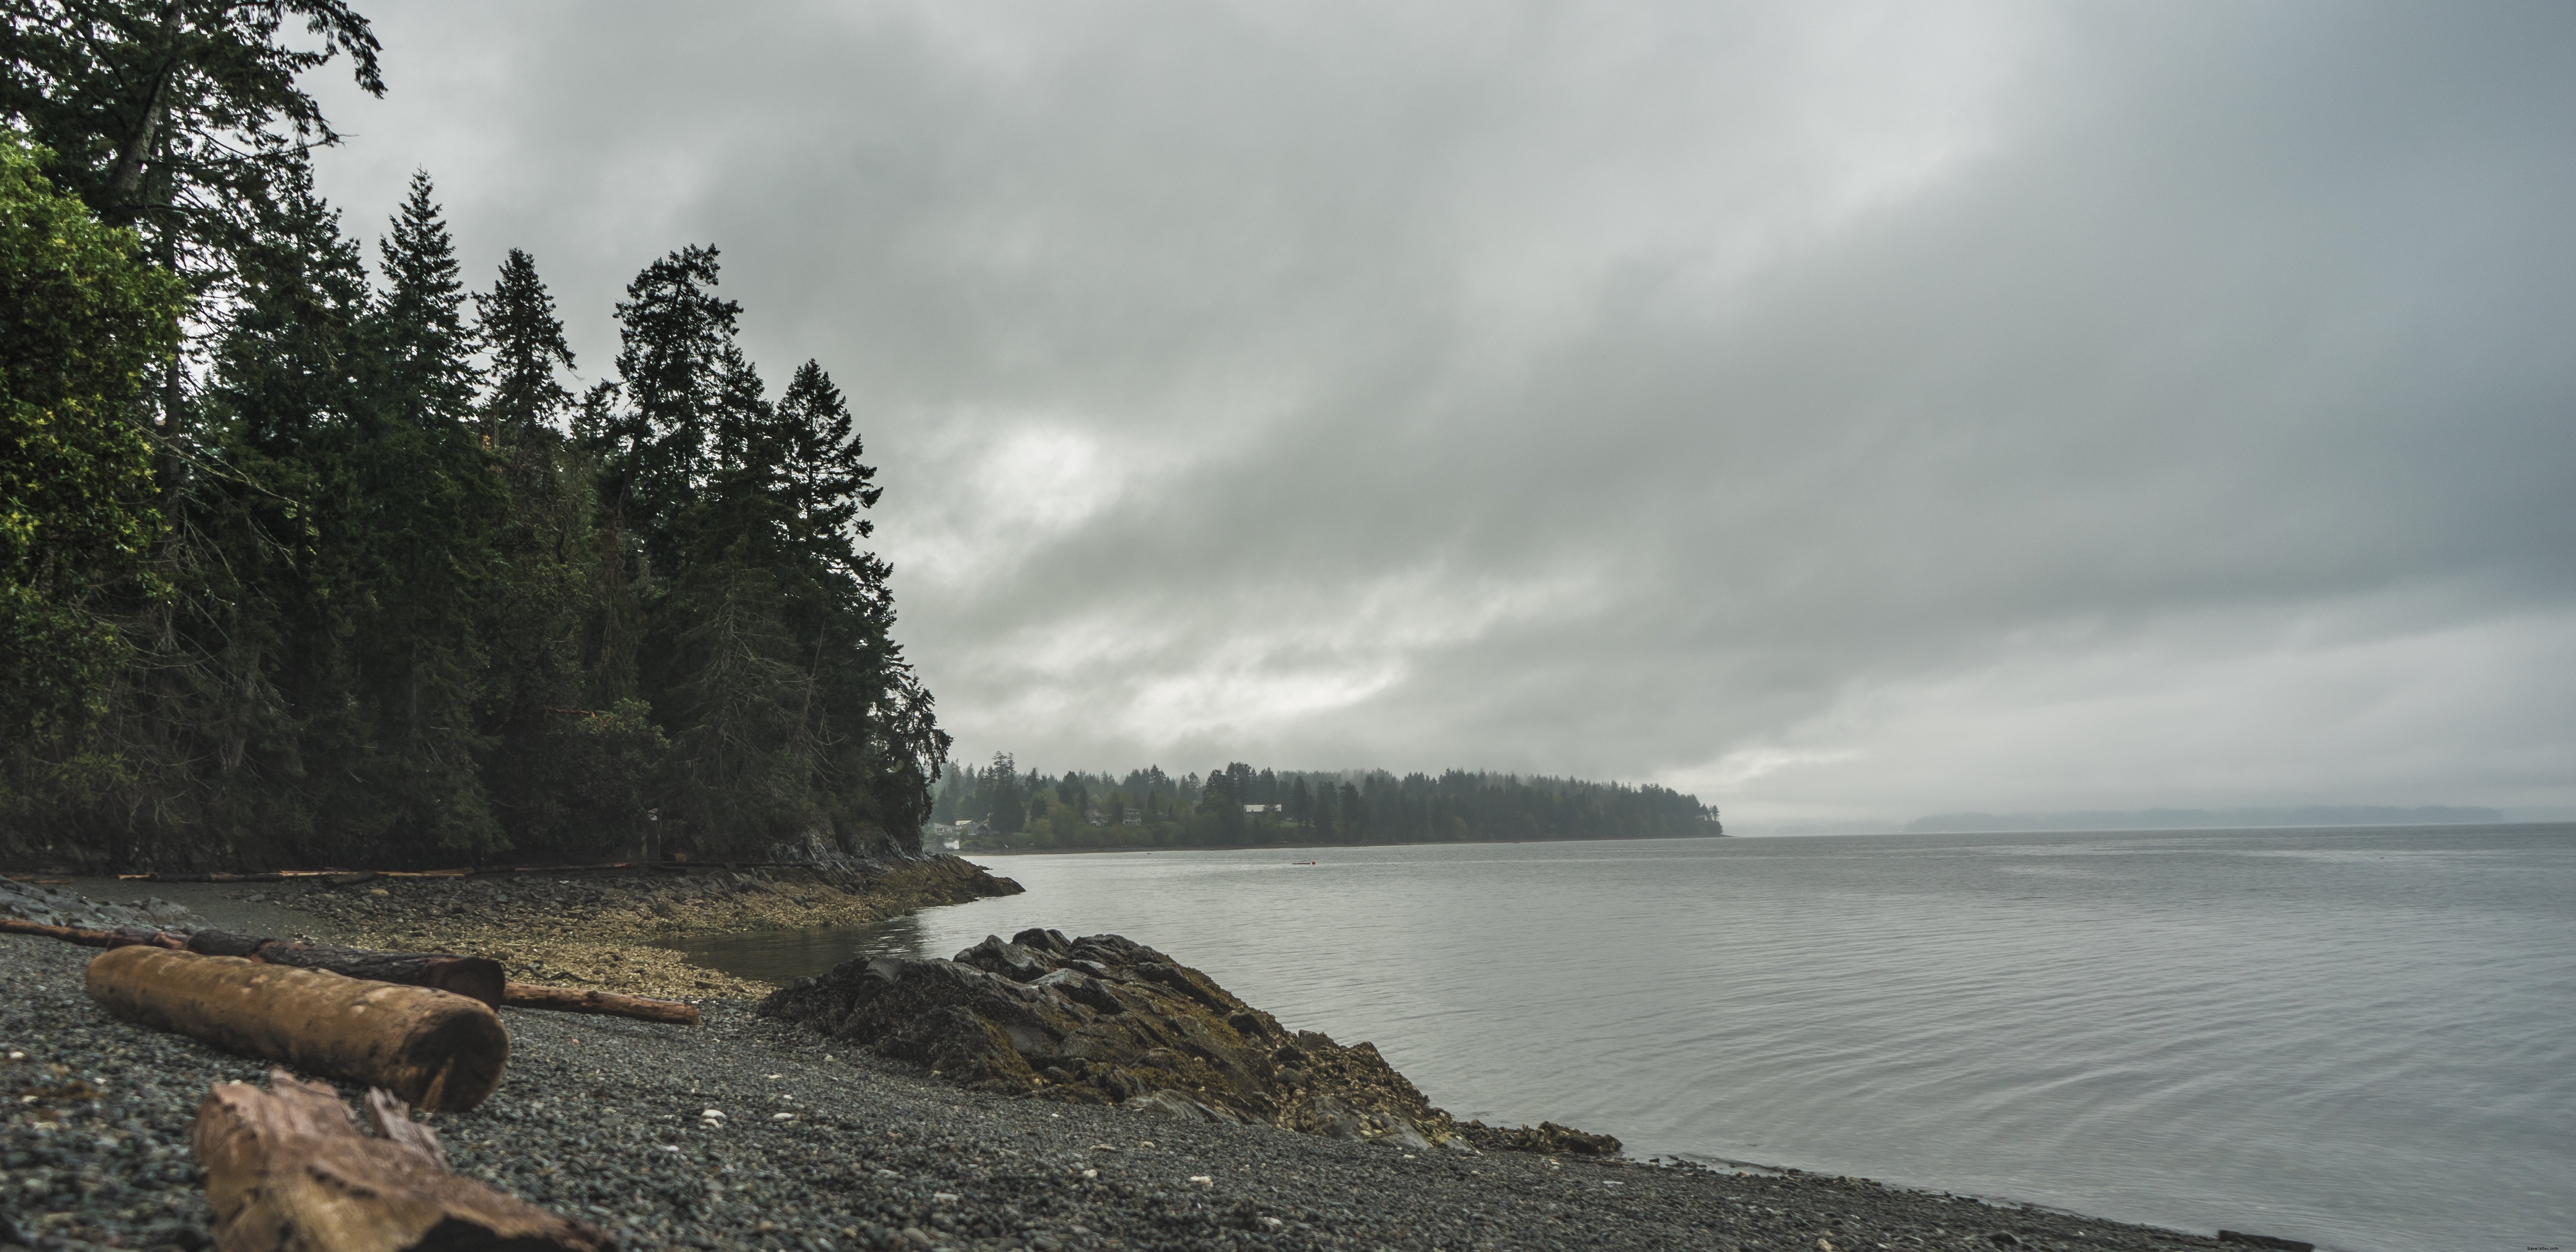 Una foto de playa de escombros bordeada de árboles grises fríos